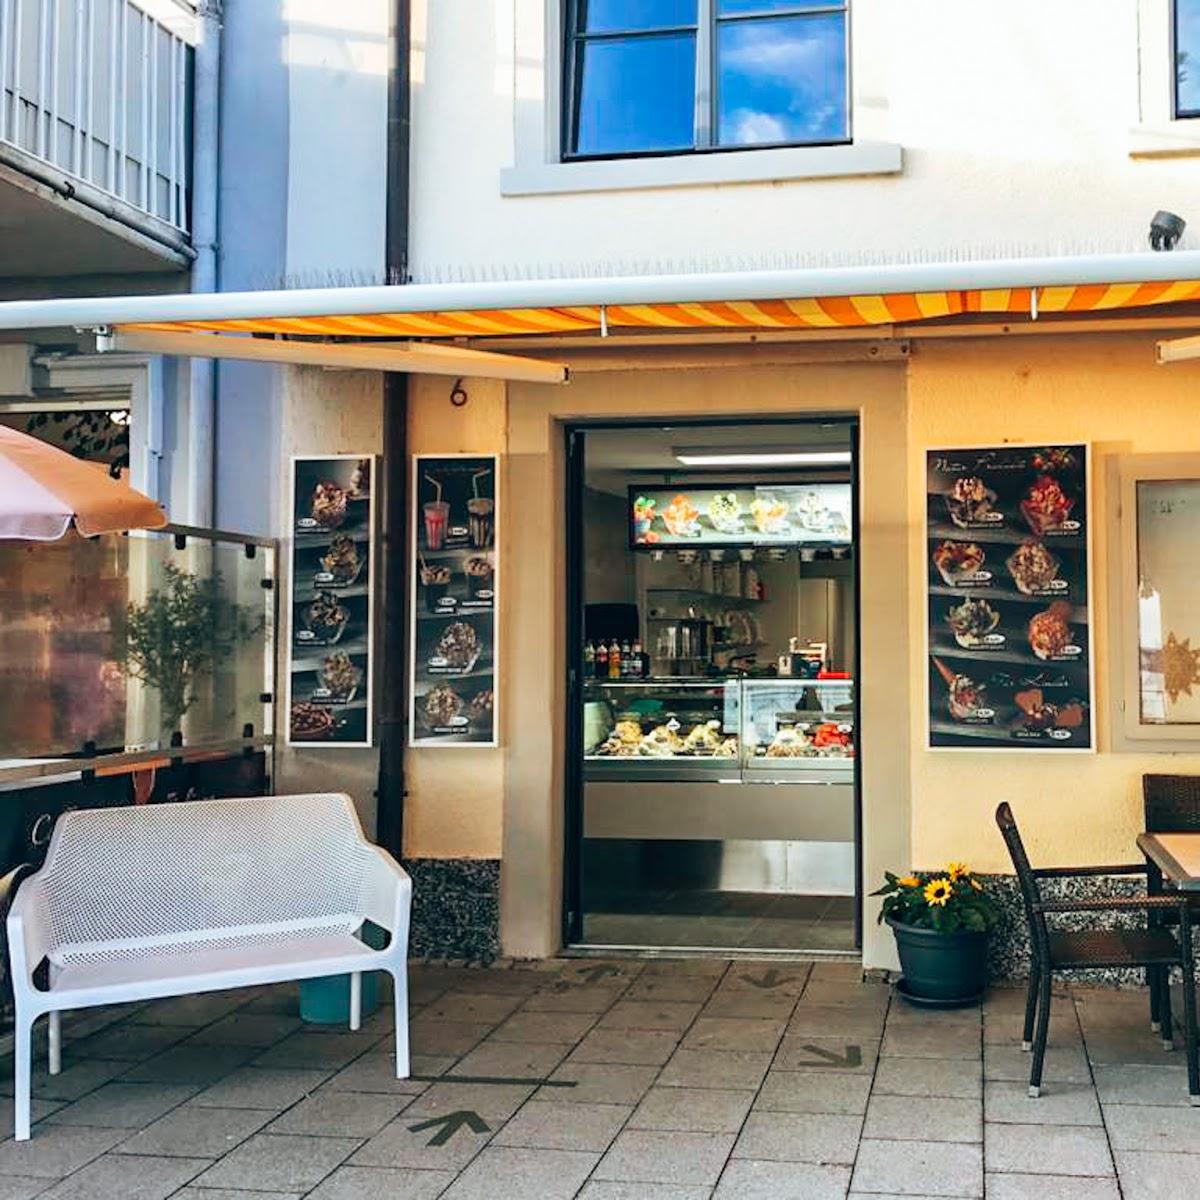 Restaurant "Capri Eiscafé am See" in Meersburg